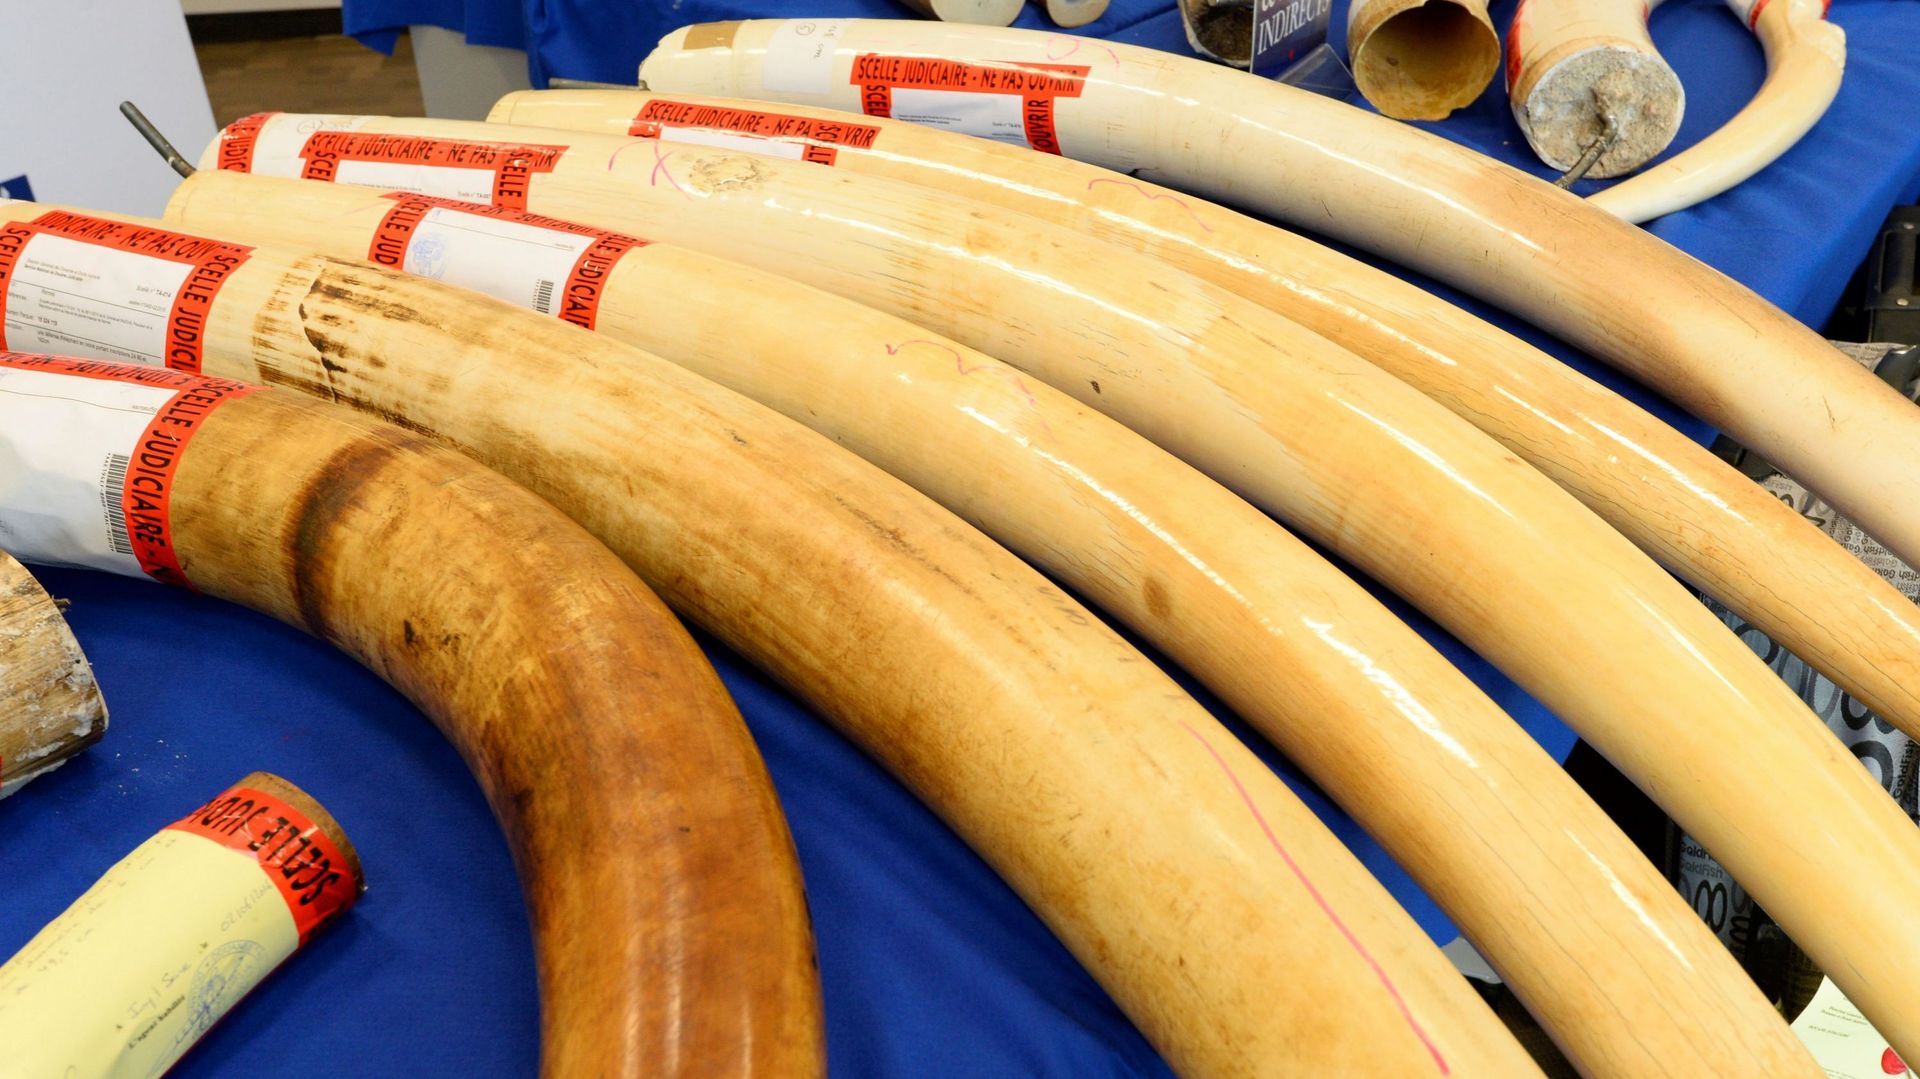 Le Zimbabwe veut vendre son stock d'ivoire pour payer ses réserves d'éléphants